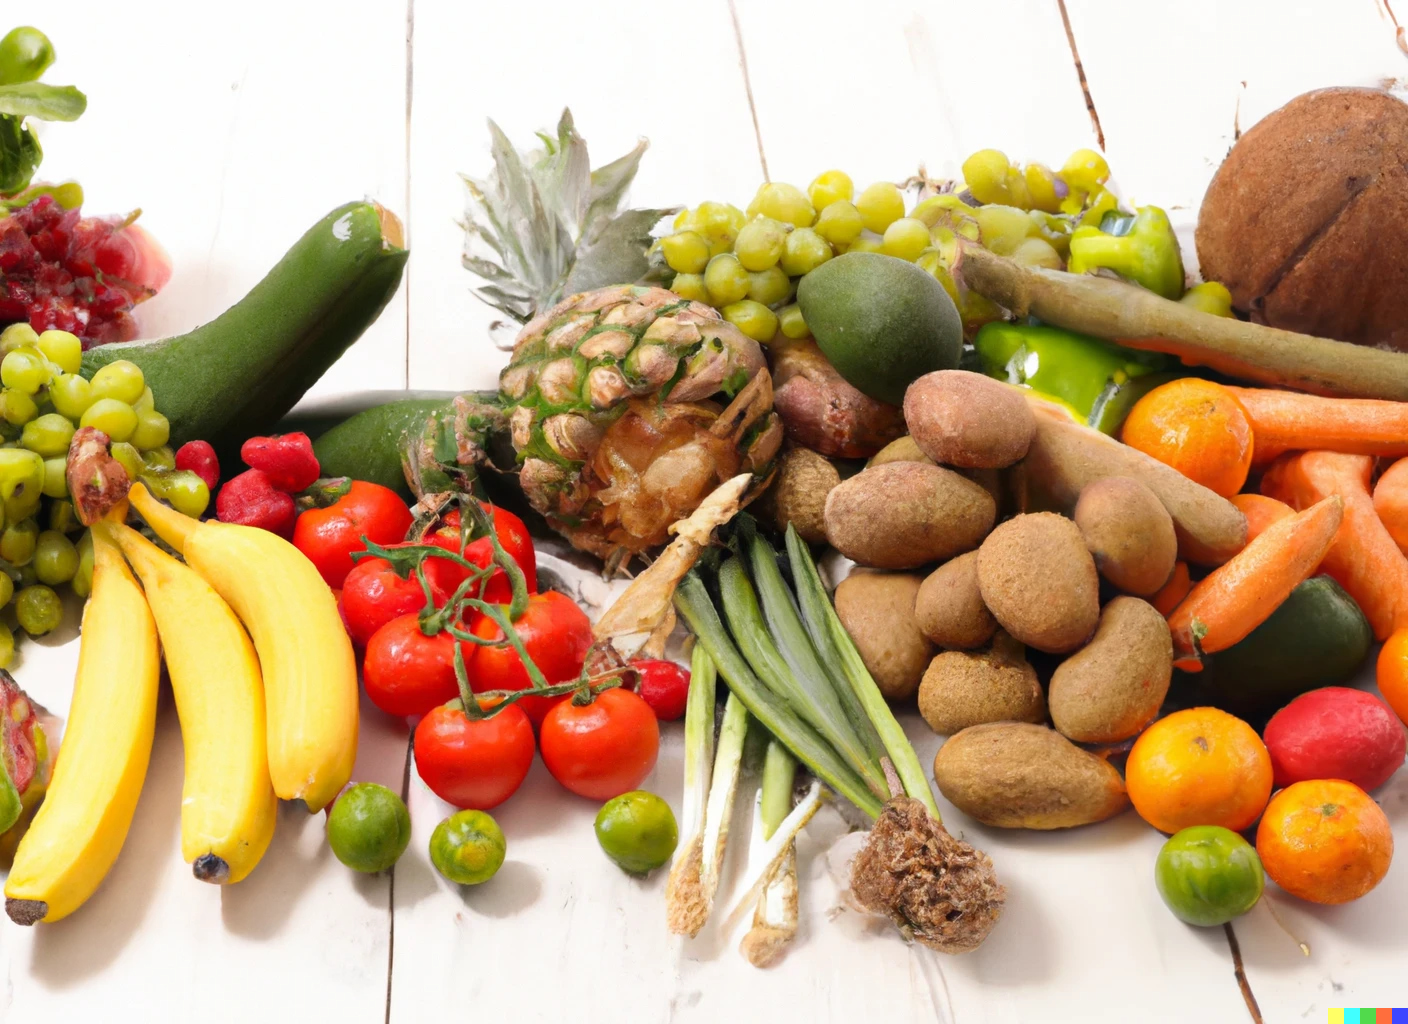 Yaz Aylarında Beslenme: Mevsim Sebze ve Meyveleri - Case101